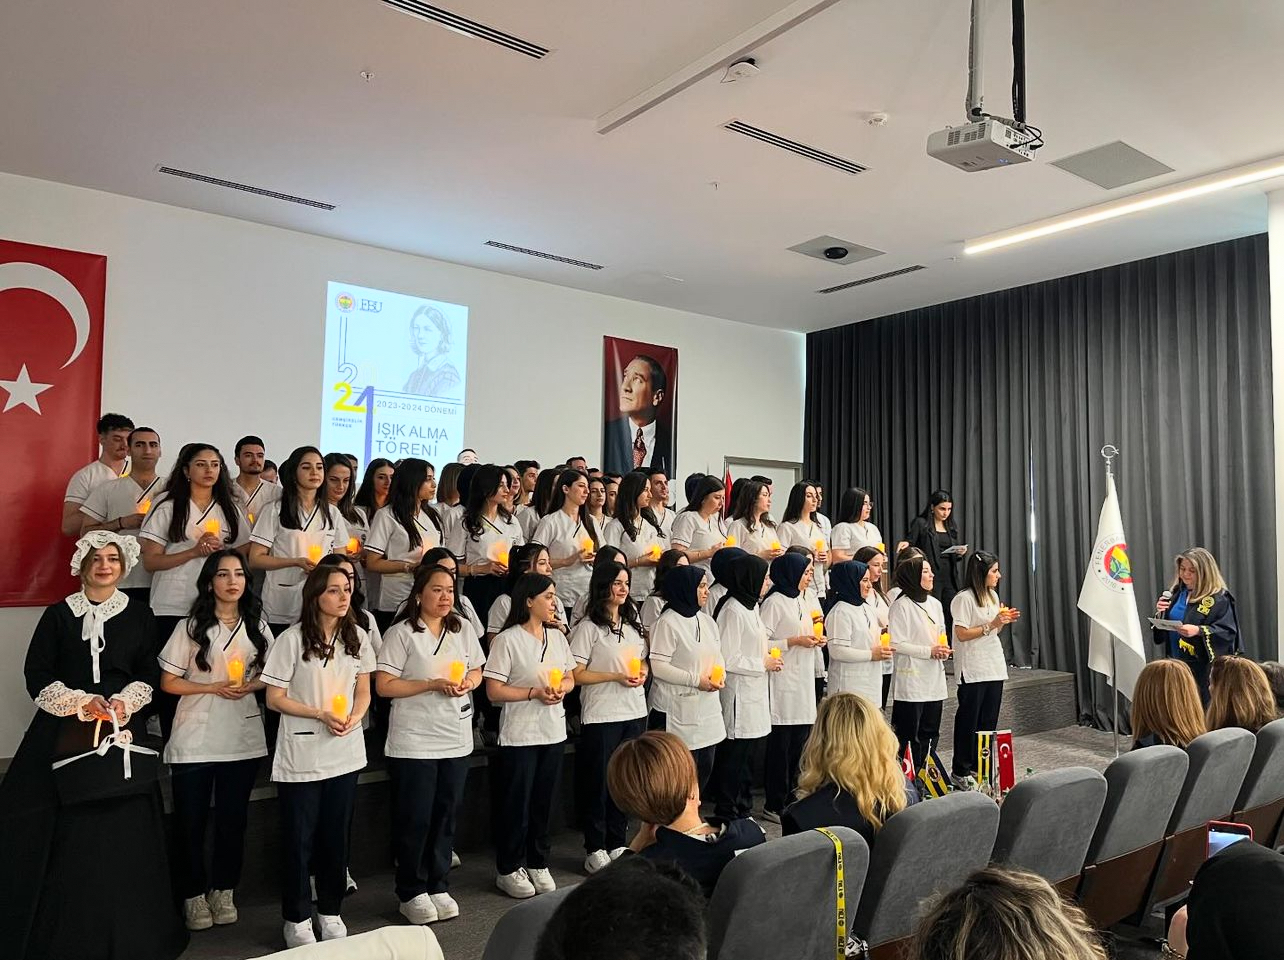 Sağlık Bilimleri Fakültesi Hemşirelik Bölümü Türkçe Programı tarafından organize edilen “Işık Alma Töreni” gerçekleştirildi.